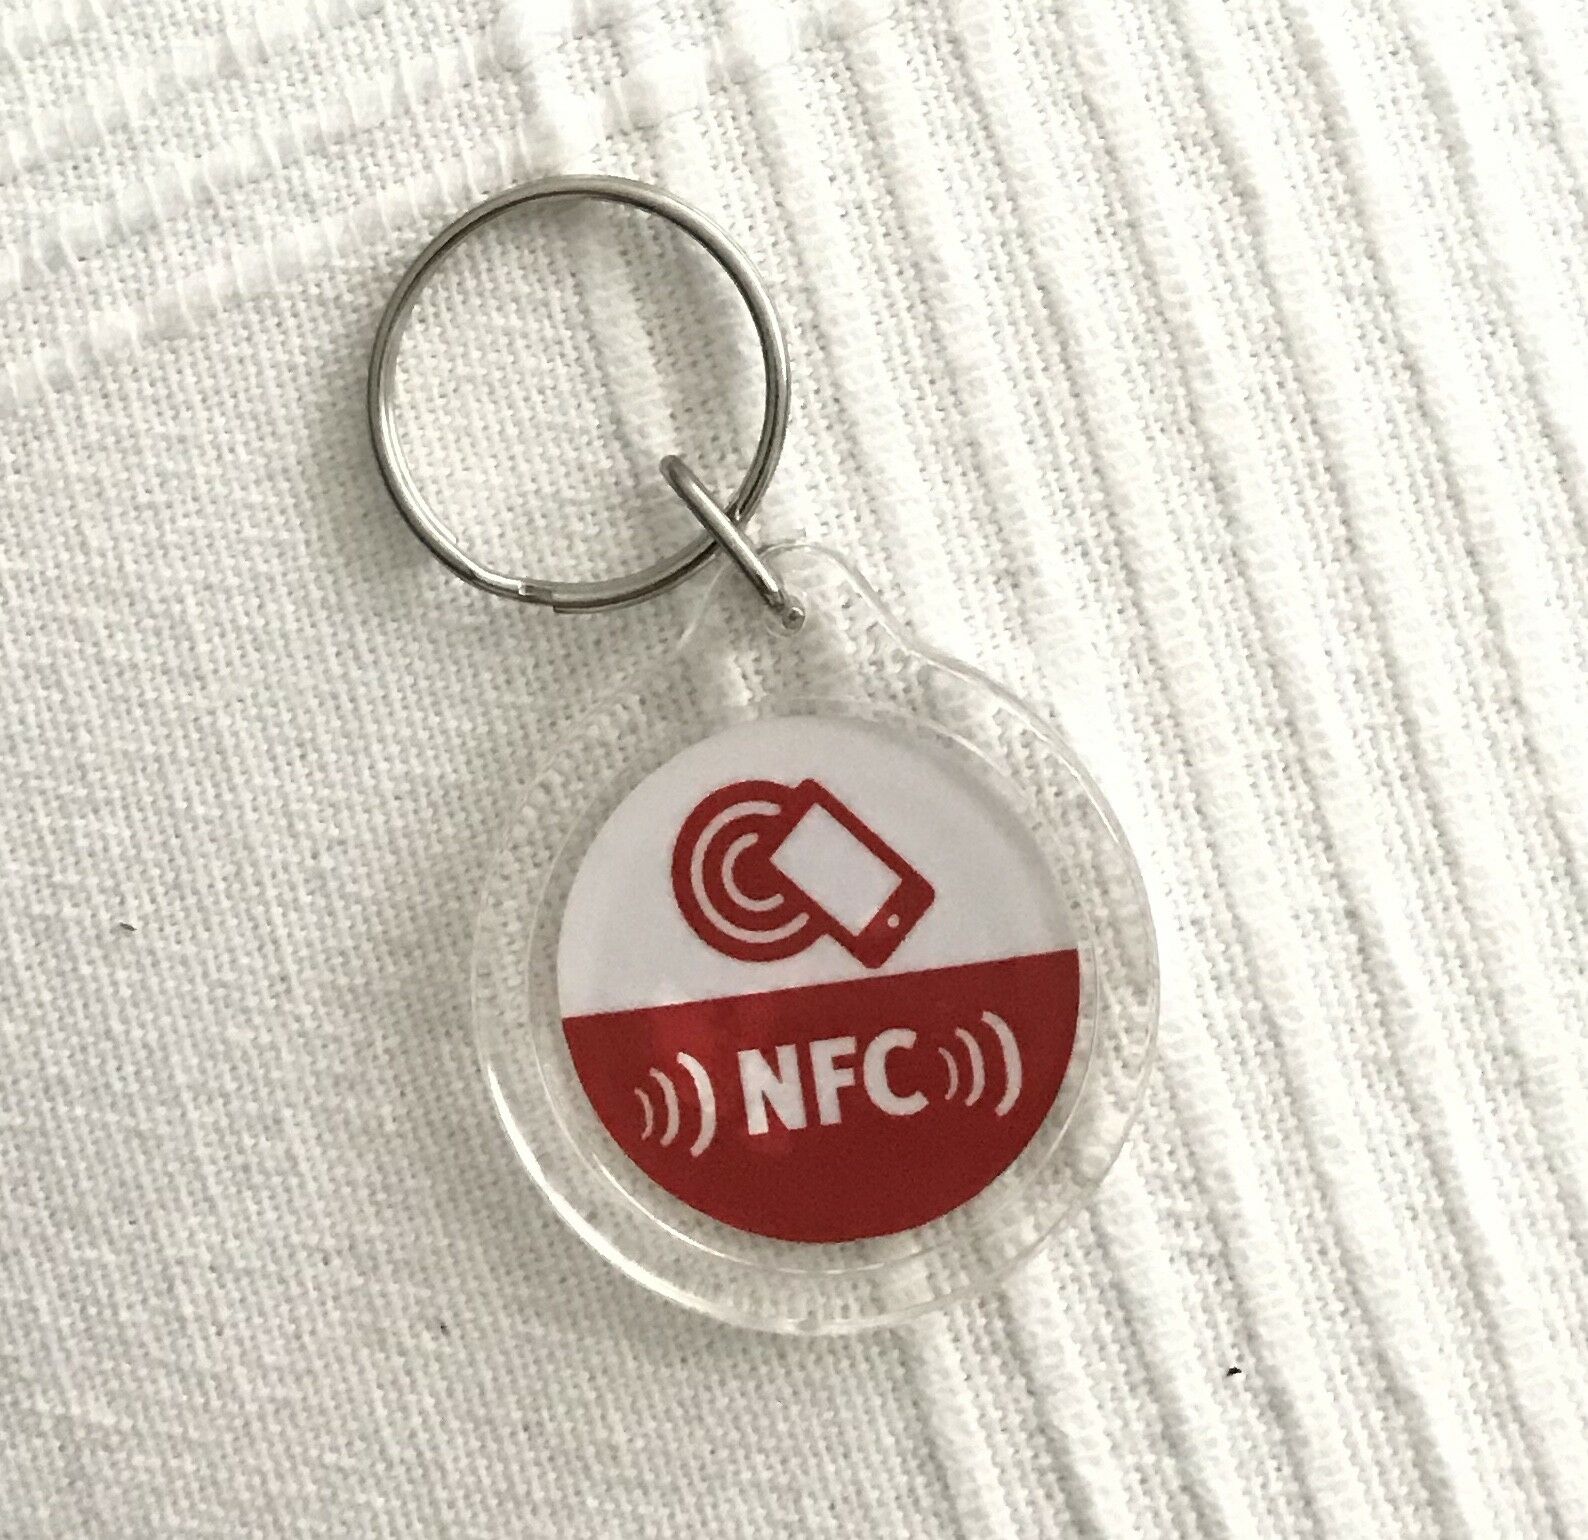 1 x NFC-Tag NTAG213 als Schlüsselanhänger für alle Smartphones geeignet